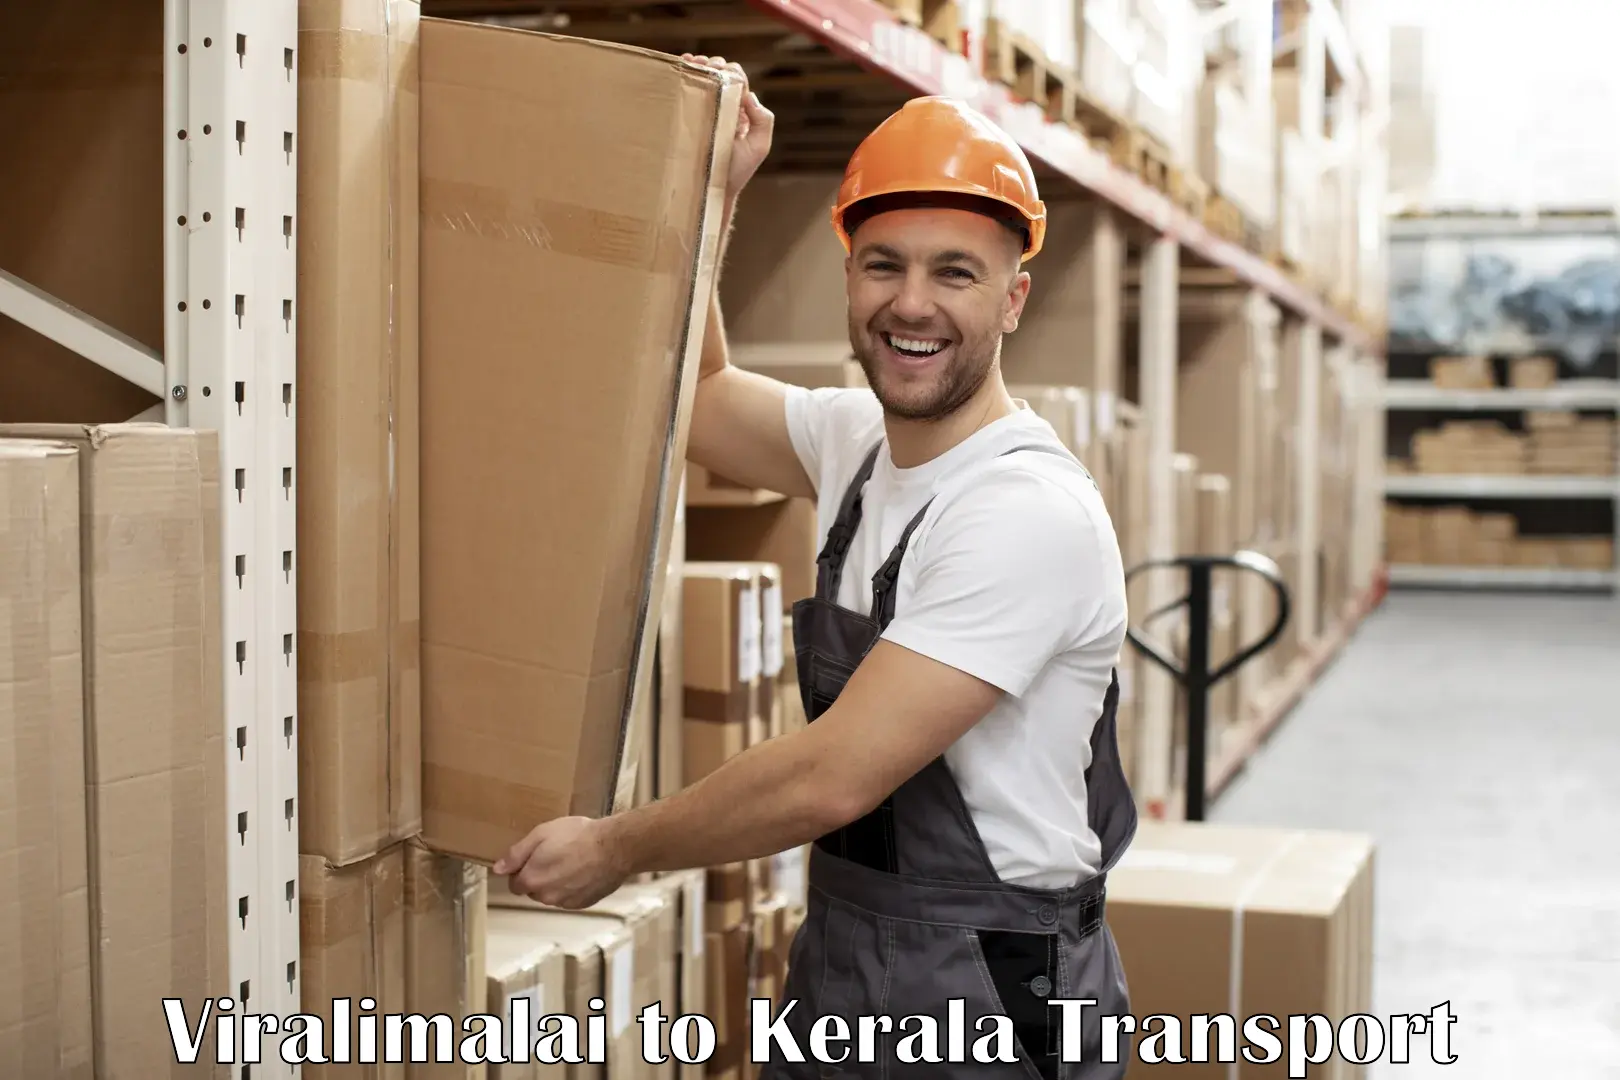 Online transport service Viralimalai to Kerala